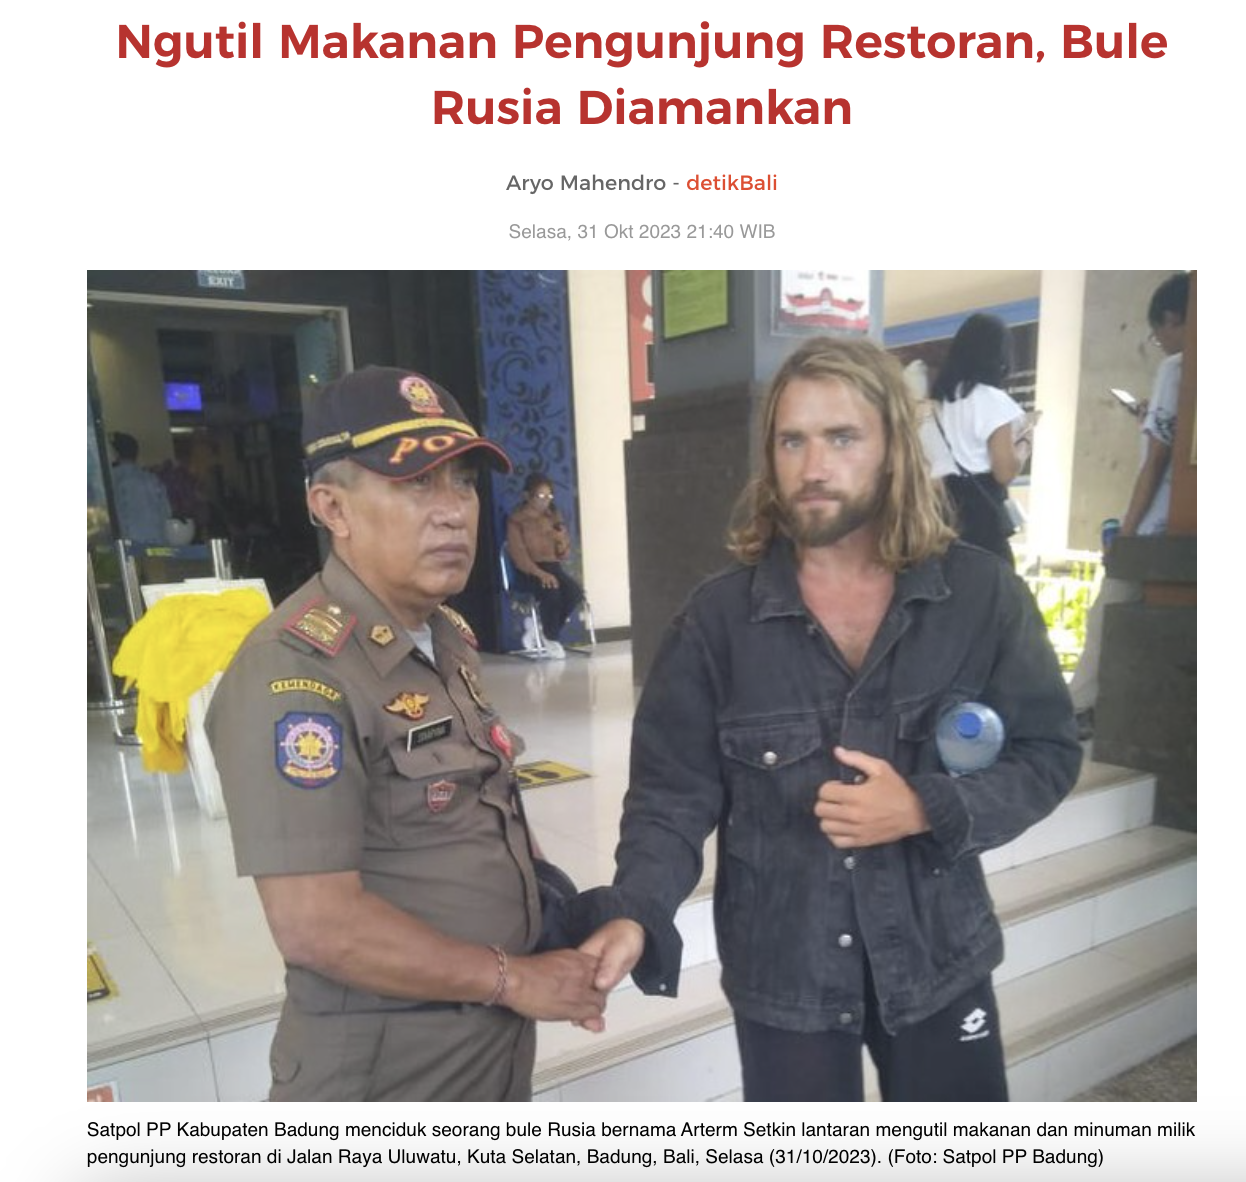 Російського туриста затримали на Балі за крадіжку їжі у відвідувачів ресторану